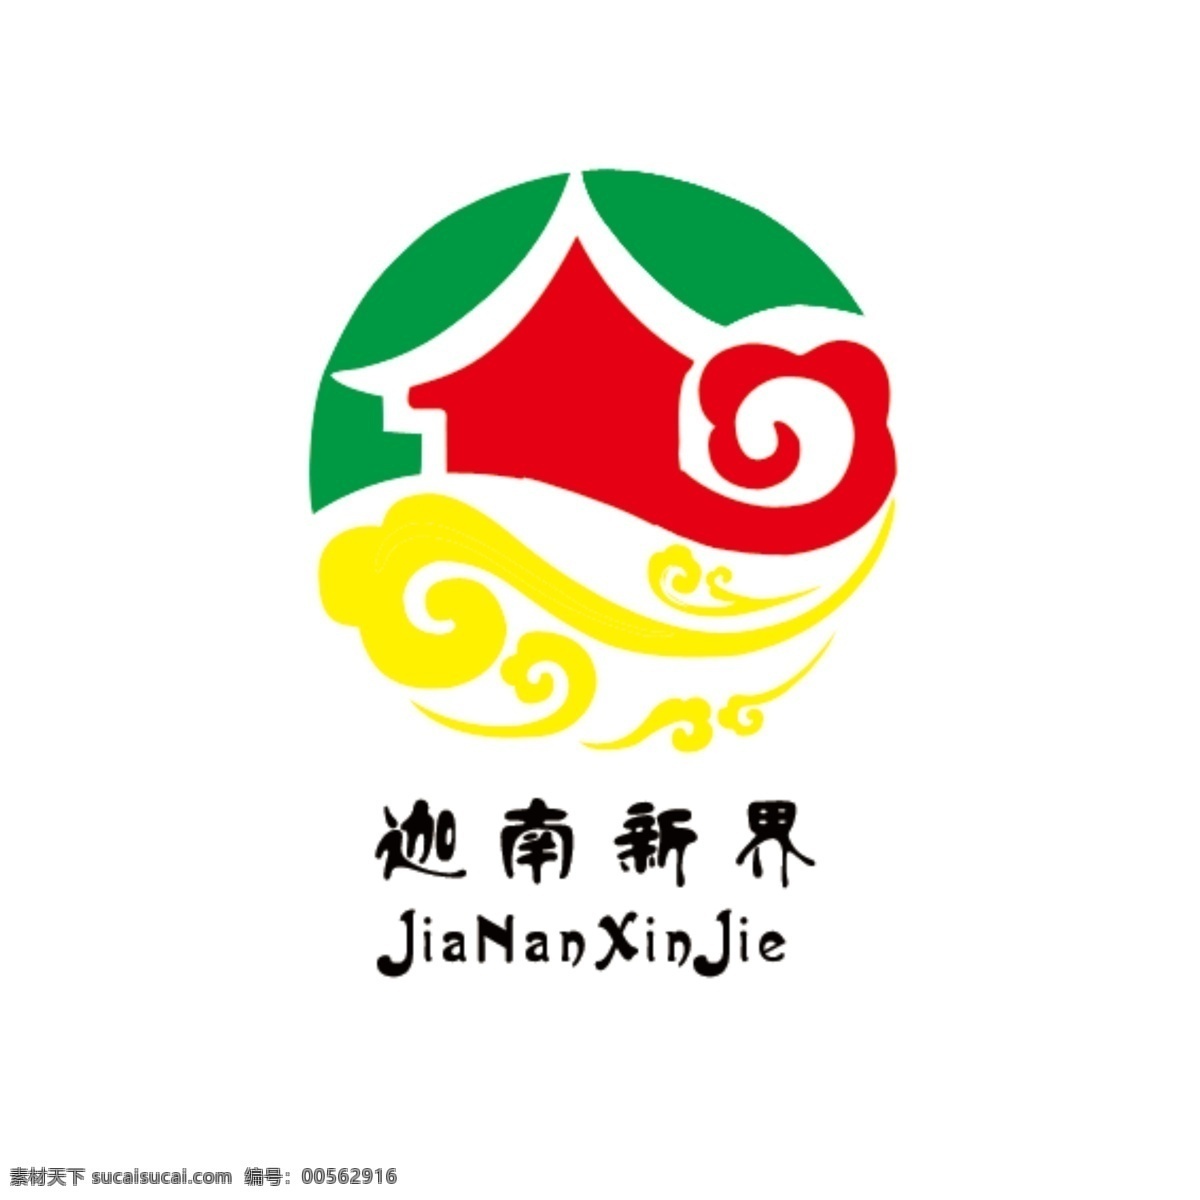 迦南新界 广告公司 logo 祥云logo 天上人间 新境界 新乐土 logo设计